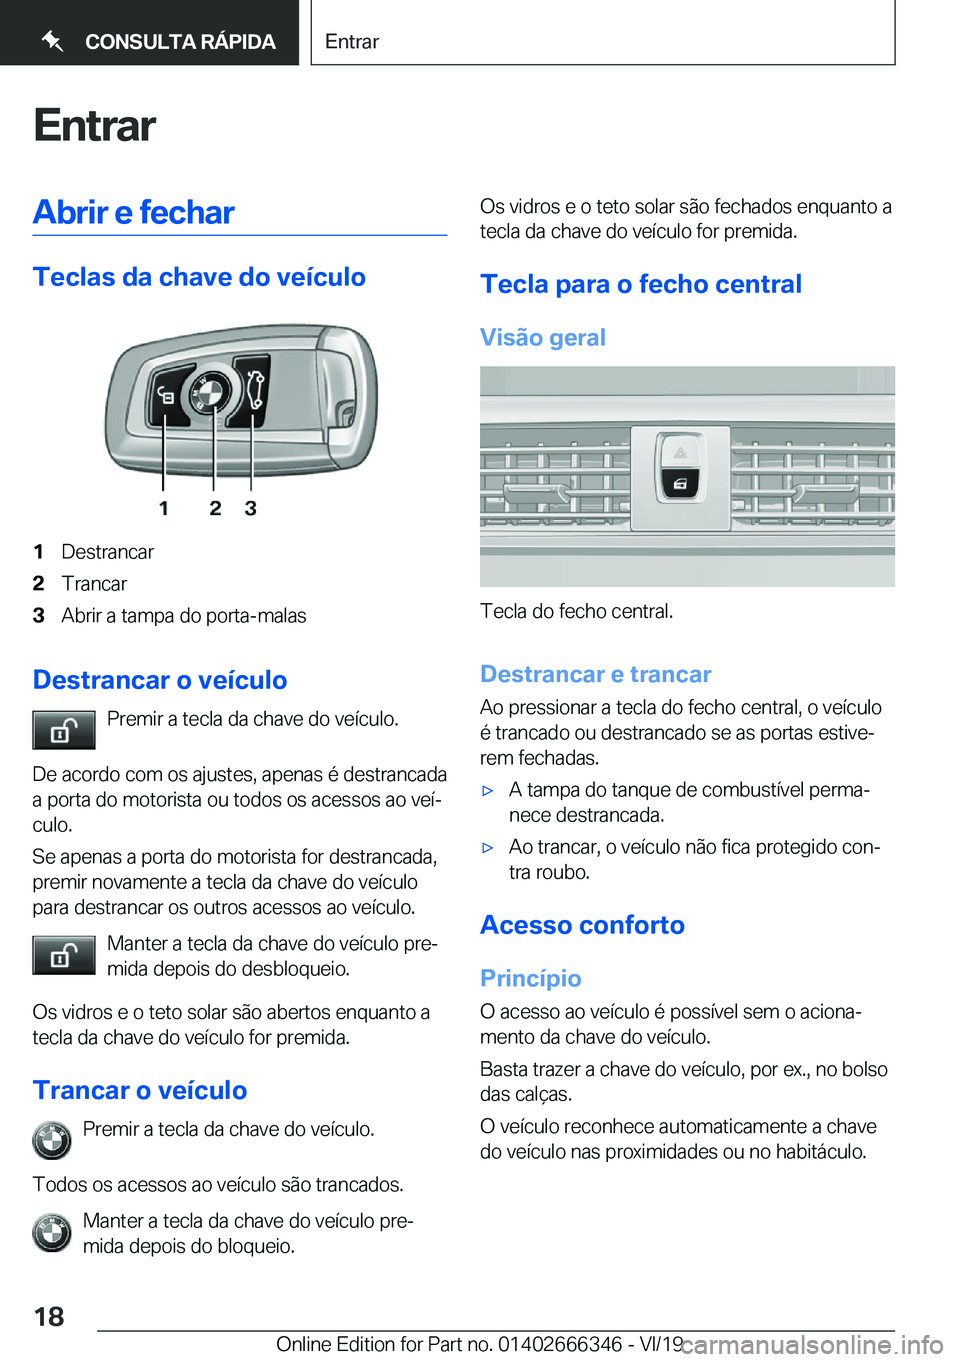 BMW 4 SERIES COUPE 2020  Manual do condutor (in Portuguese) �E�n�t�r�a�r�A�b�r�i�r��e��f�e�c�h�a�r
�T�e�c�l�a�s��d�a��c�h�a�v�e��d�o��v�e�